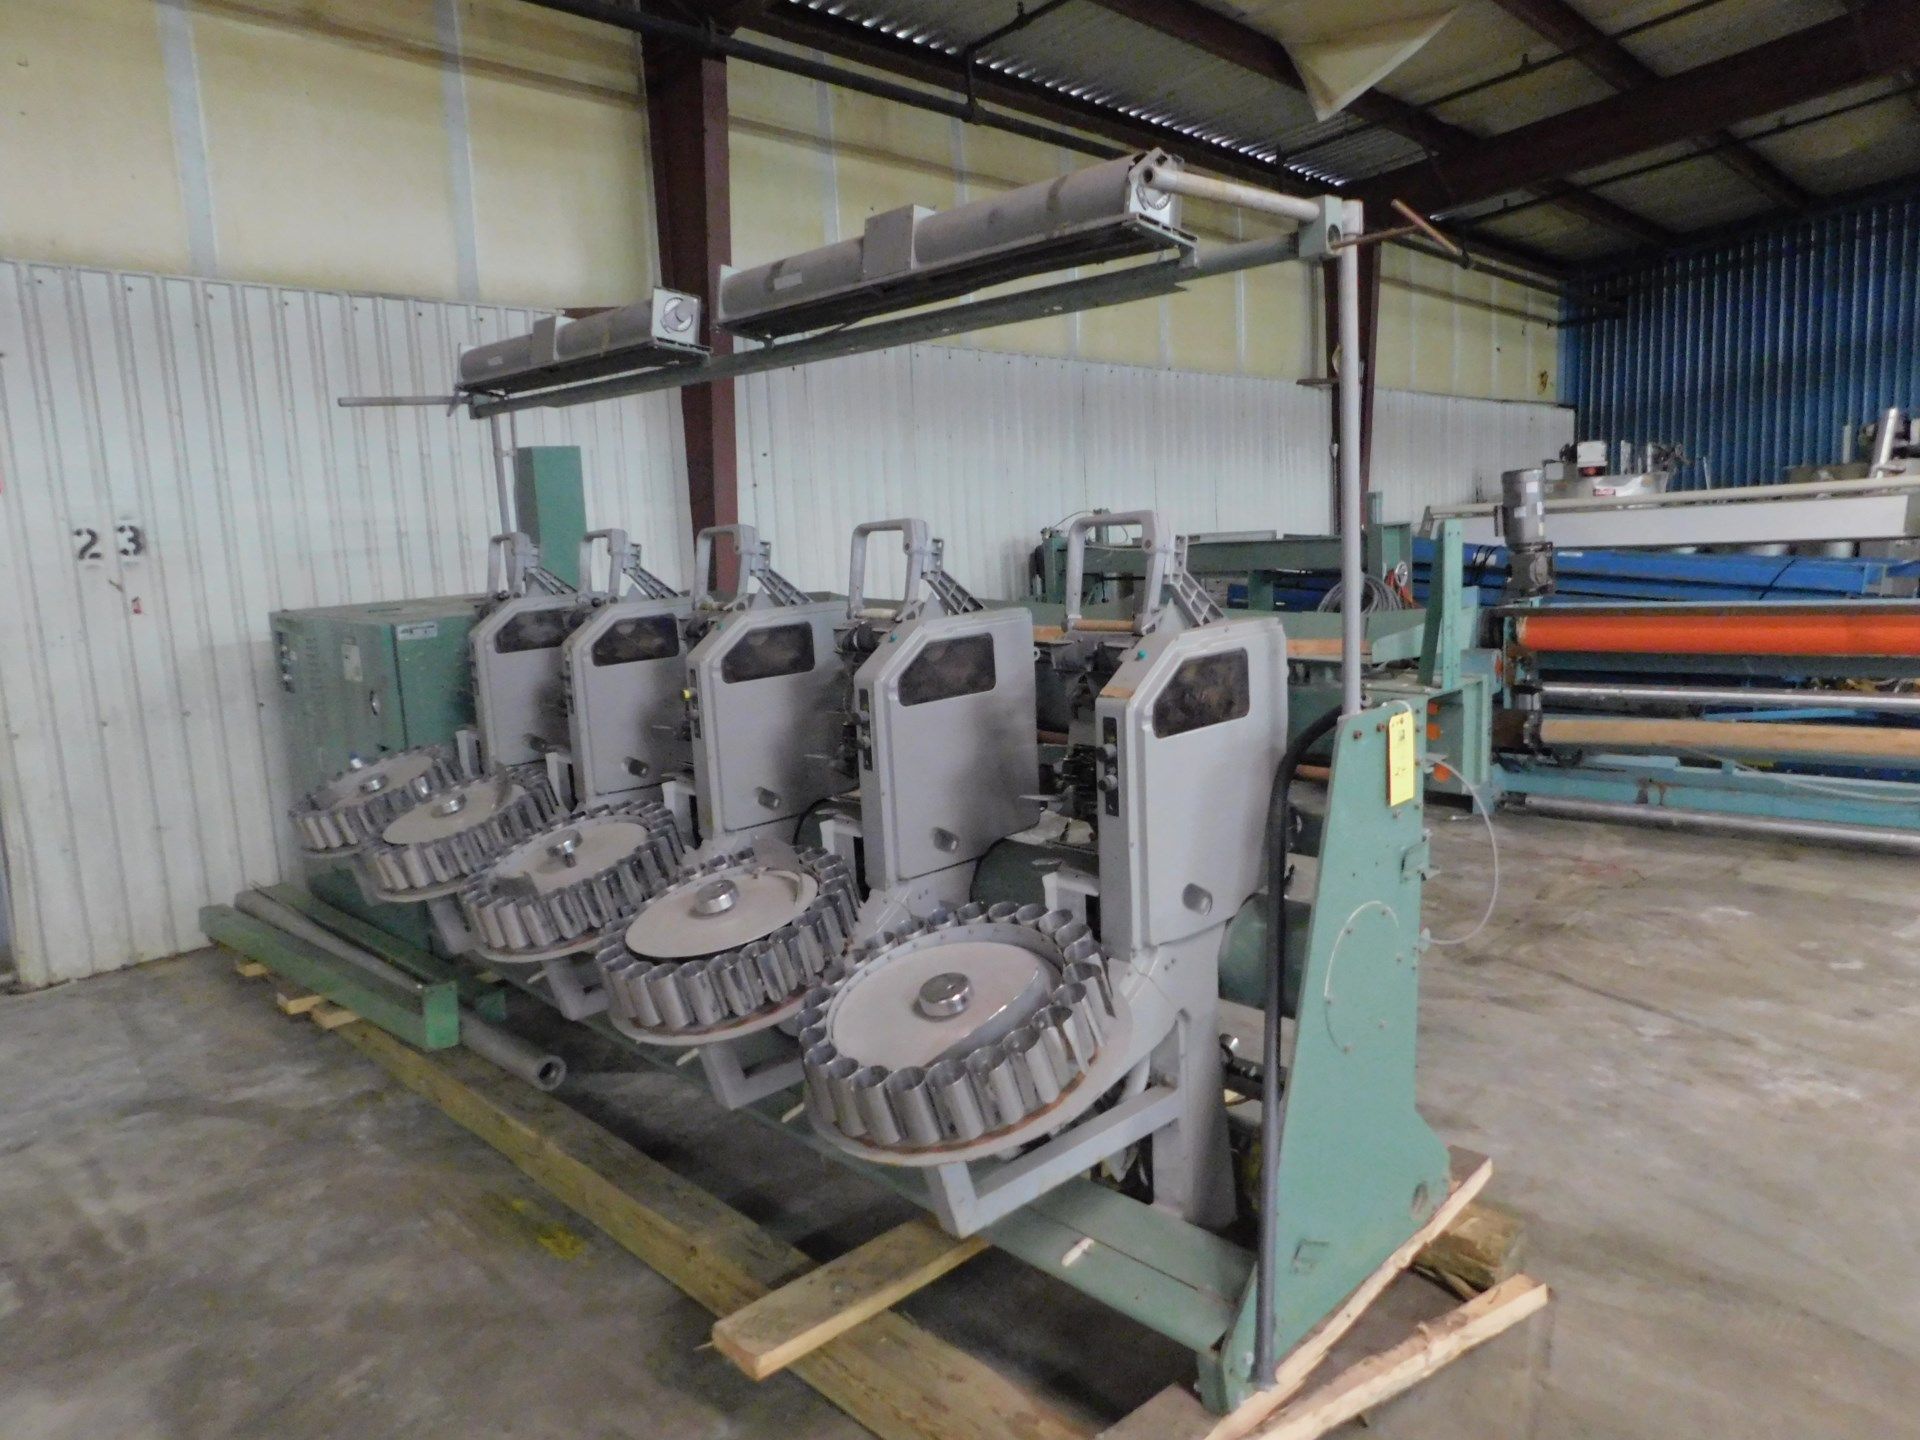 Murata Machinery Winding Machine, Model# 7R2, Serial# 89SX469040-01, 380V, 50 Hz, Working Width - Image 3 of 8